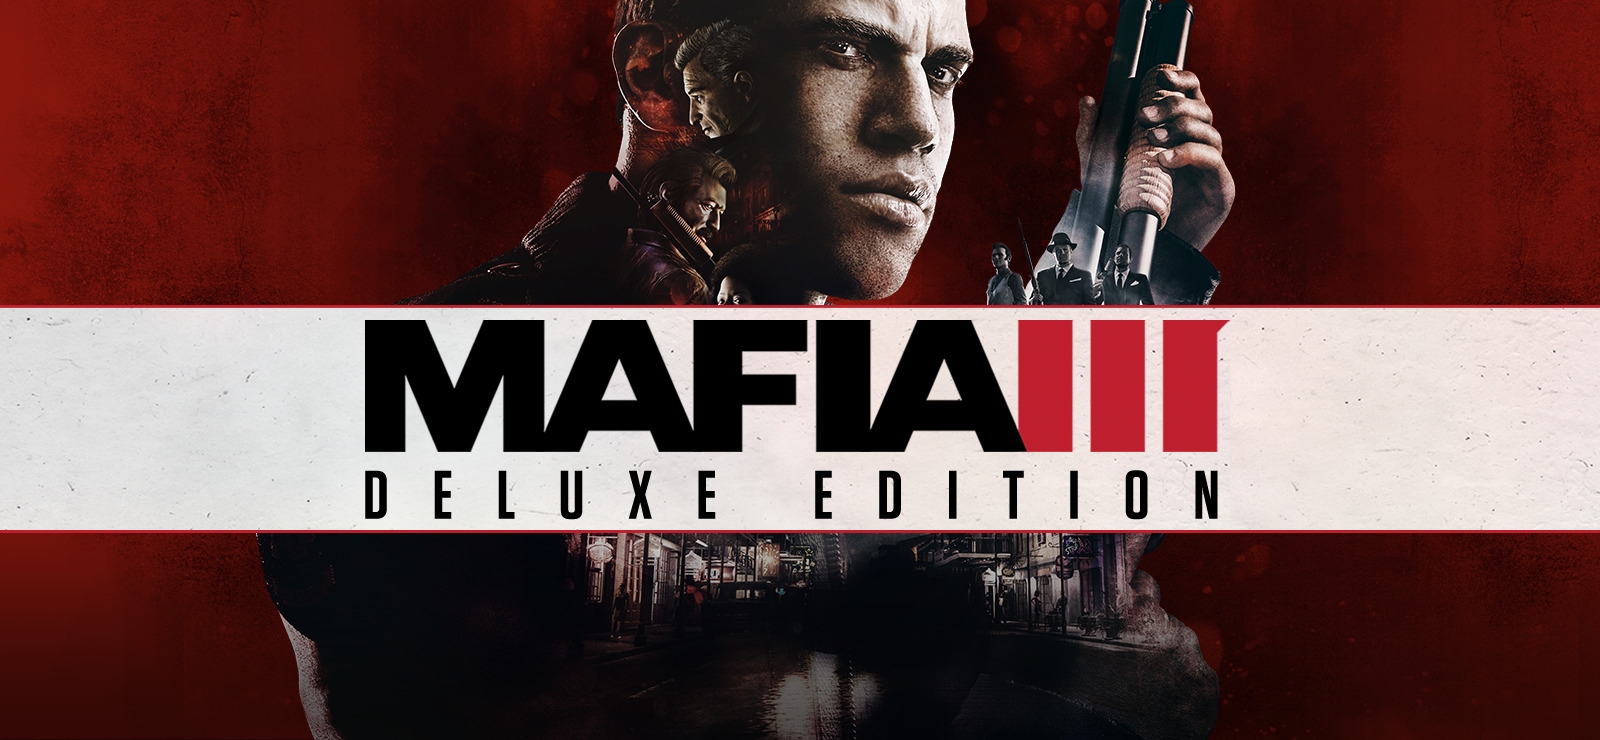 Mafia III - Xbox One